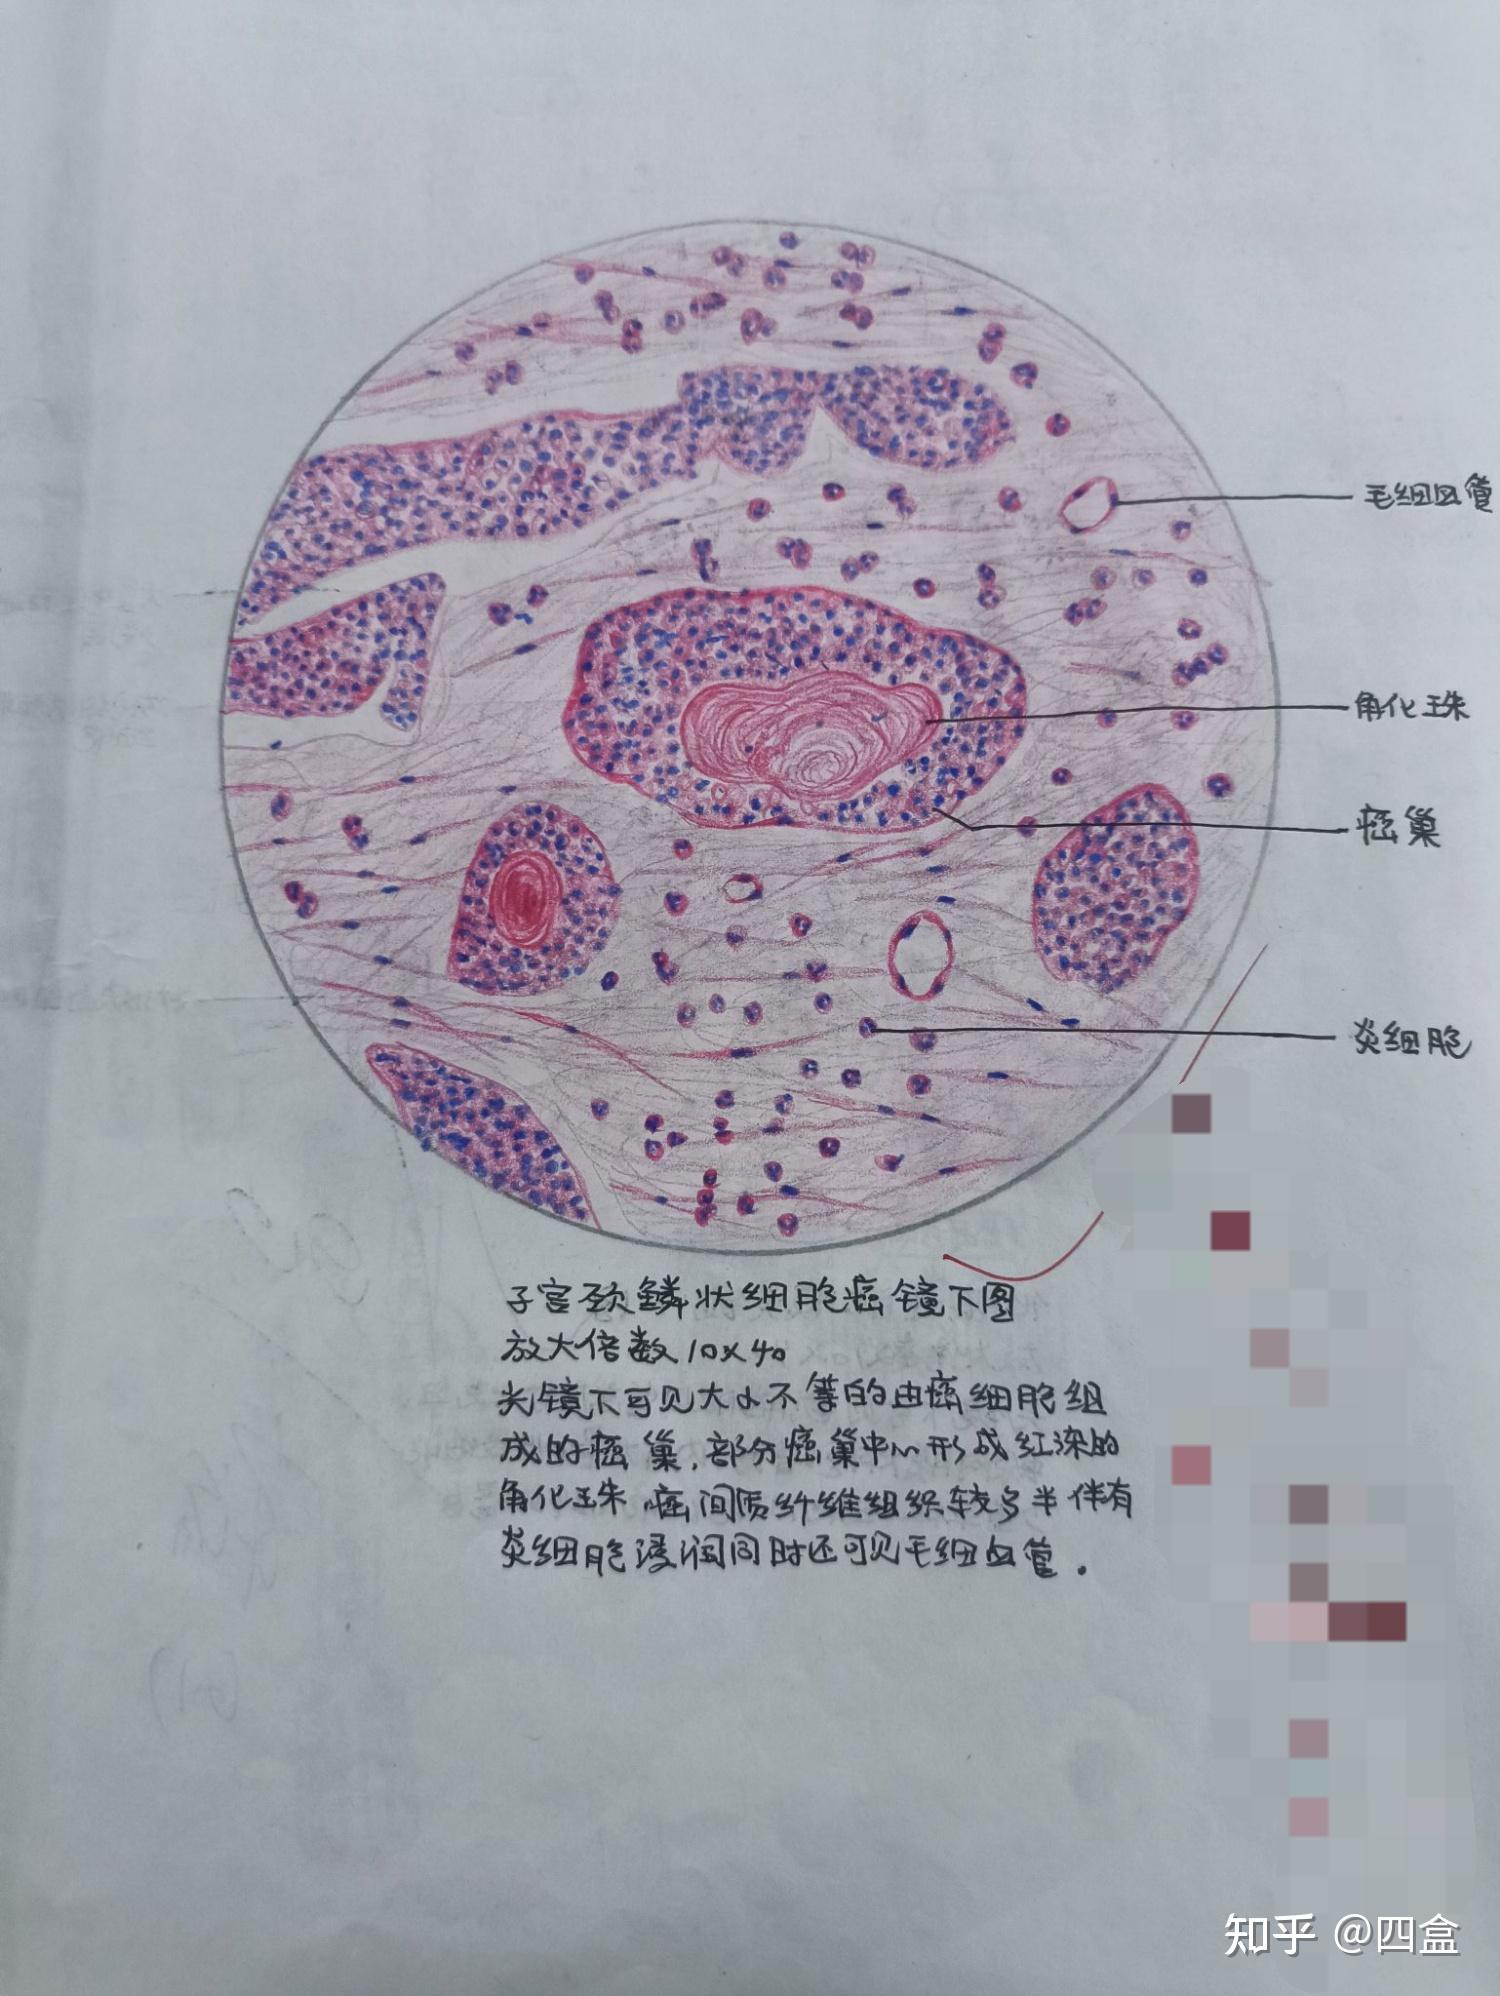 血细胞手绘图红蓝铅笔图片